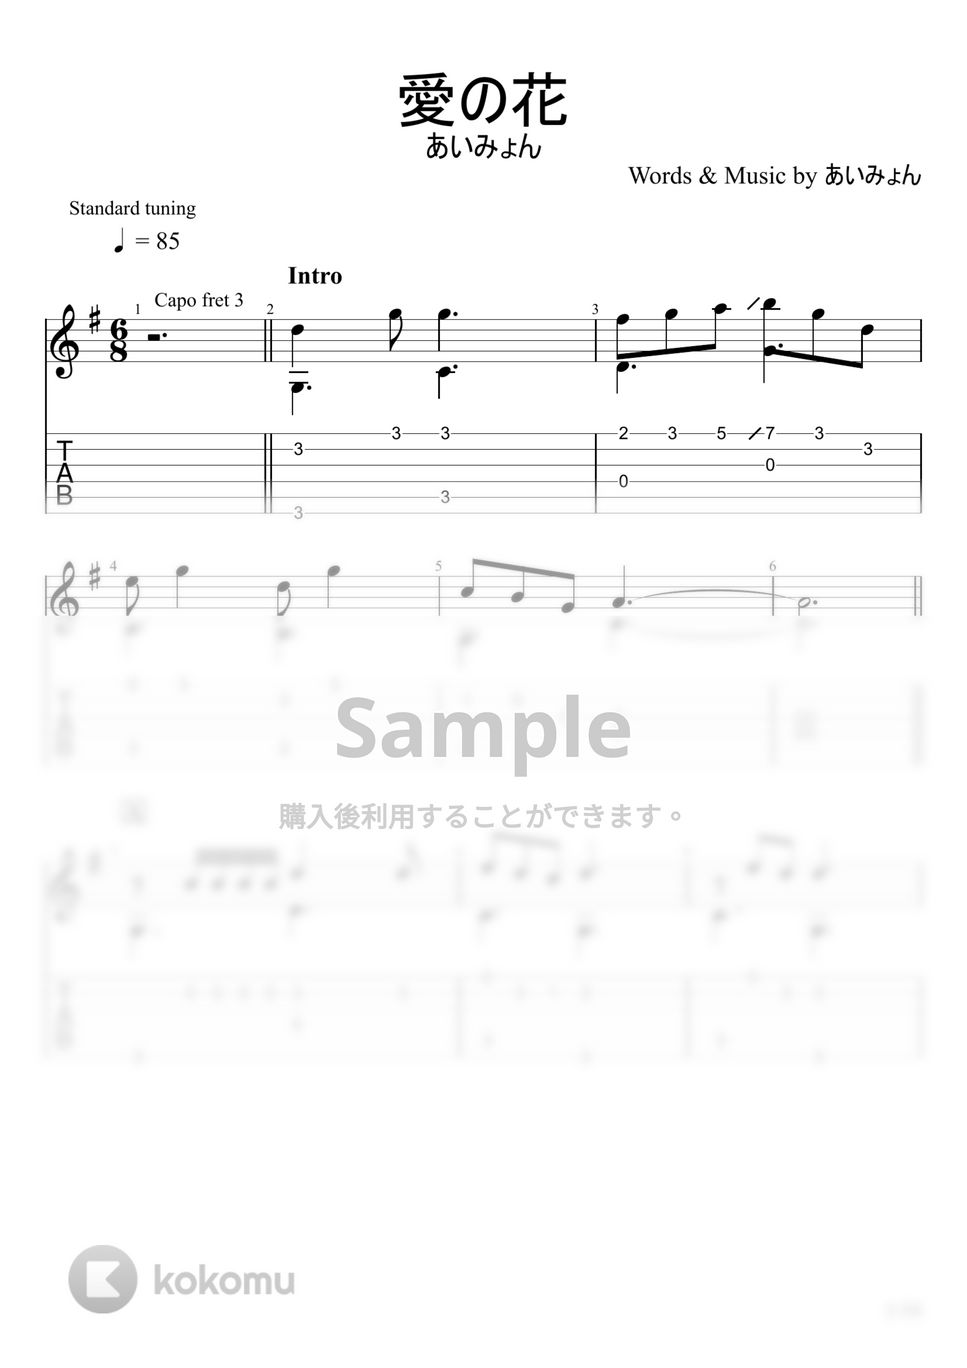 あいみょん - 愛の花 (ソロギター) by u3danchou